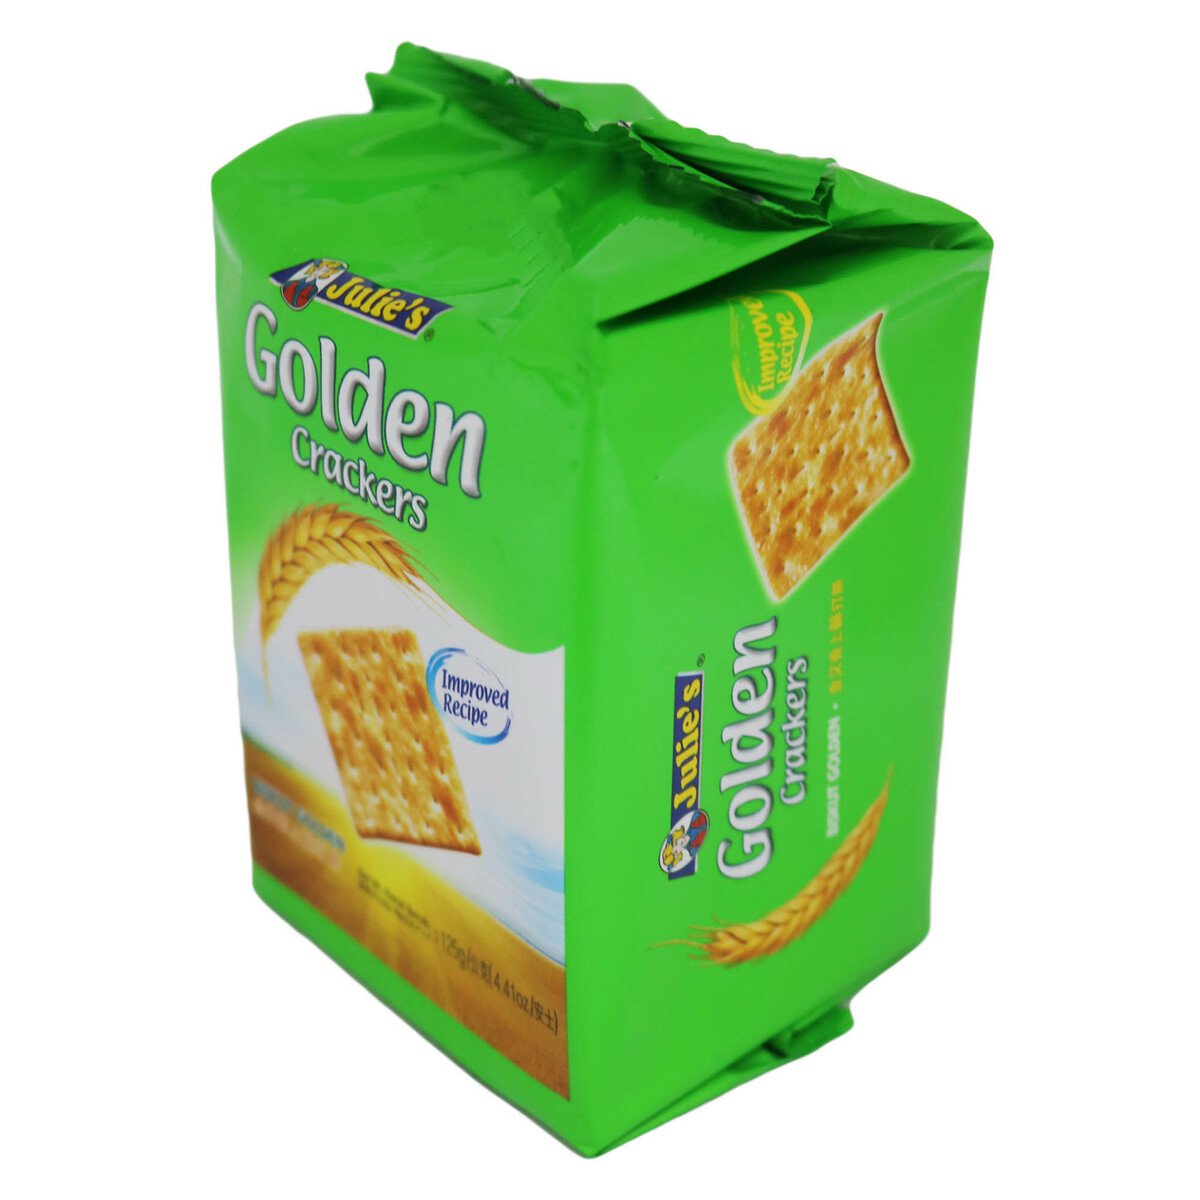 Julies Golden Crackers 125g